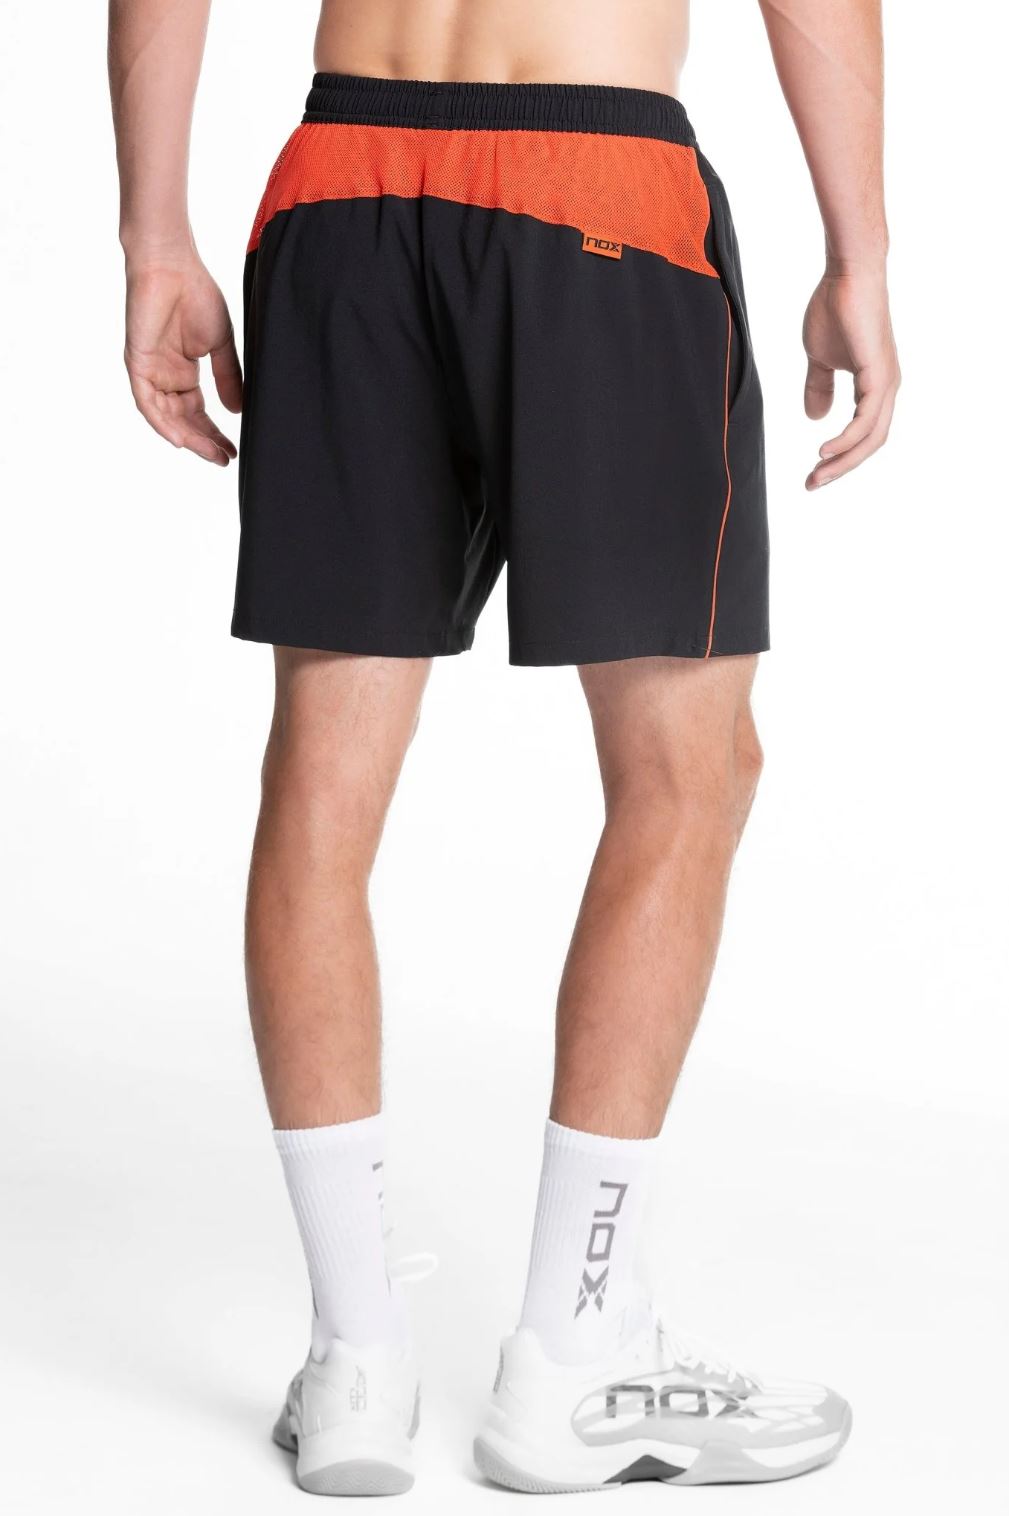 Nox Padel Shorts (Black)